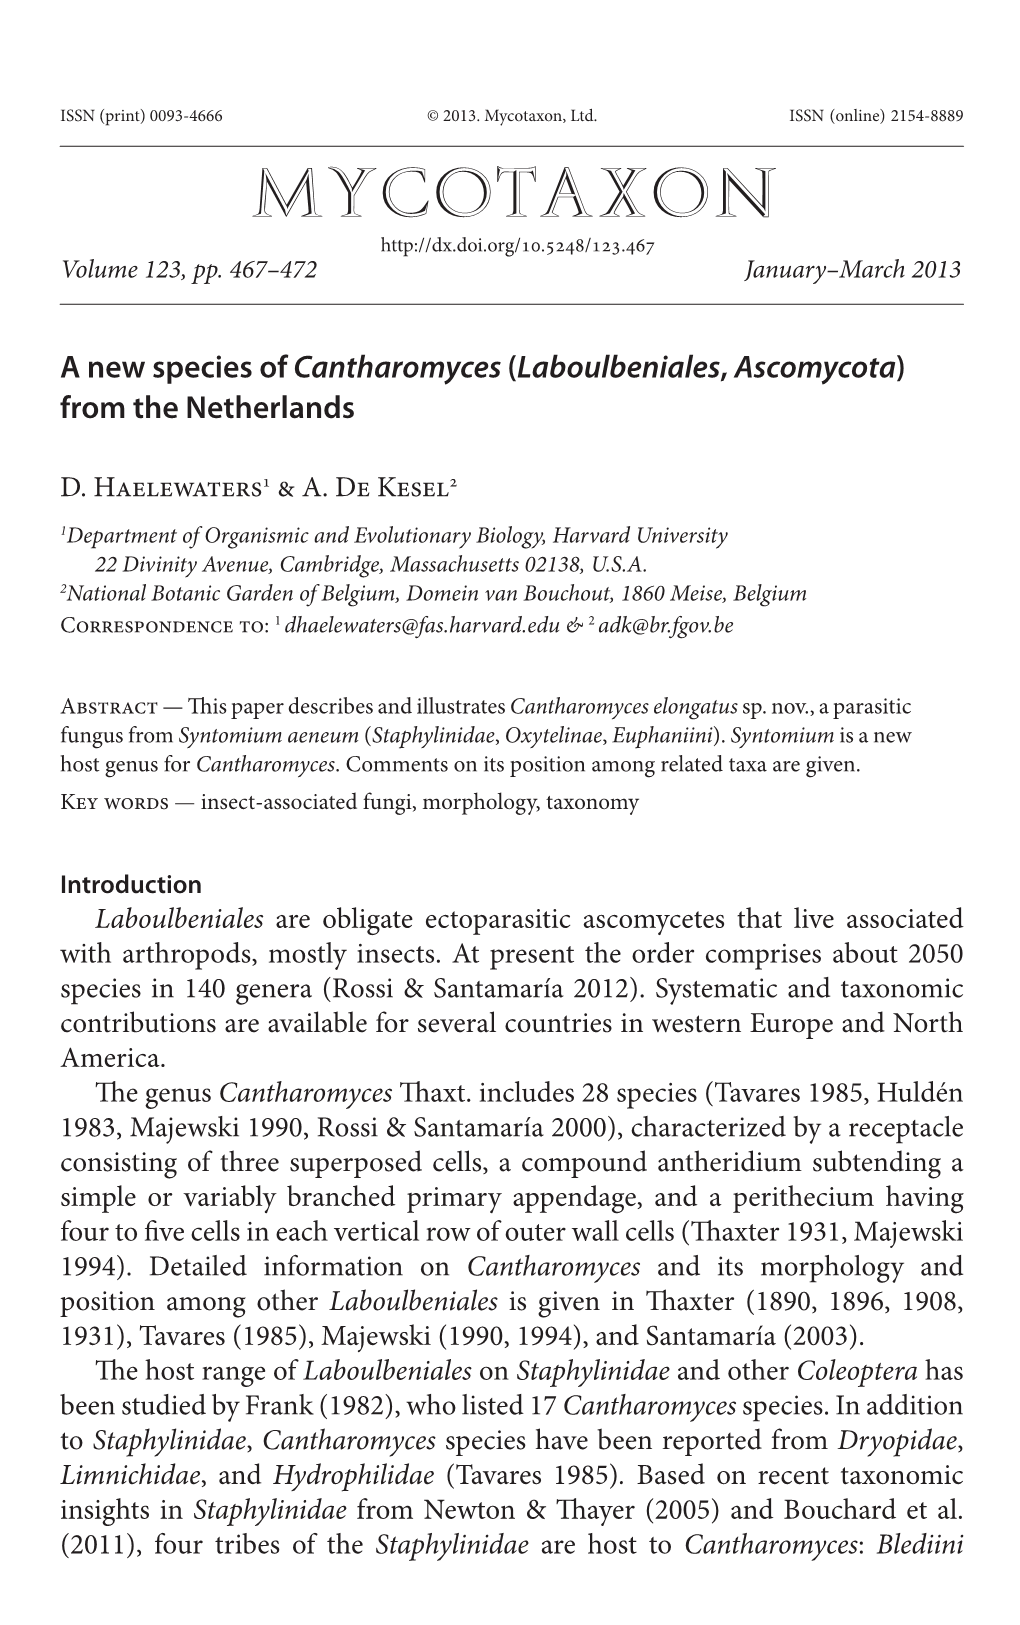 A New Species of &lt;I&gt;Cantharomyces&lt;/I&gt; (&lt;I